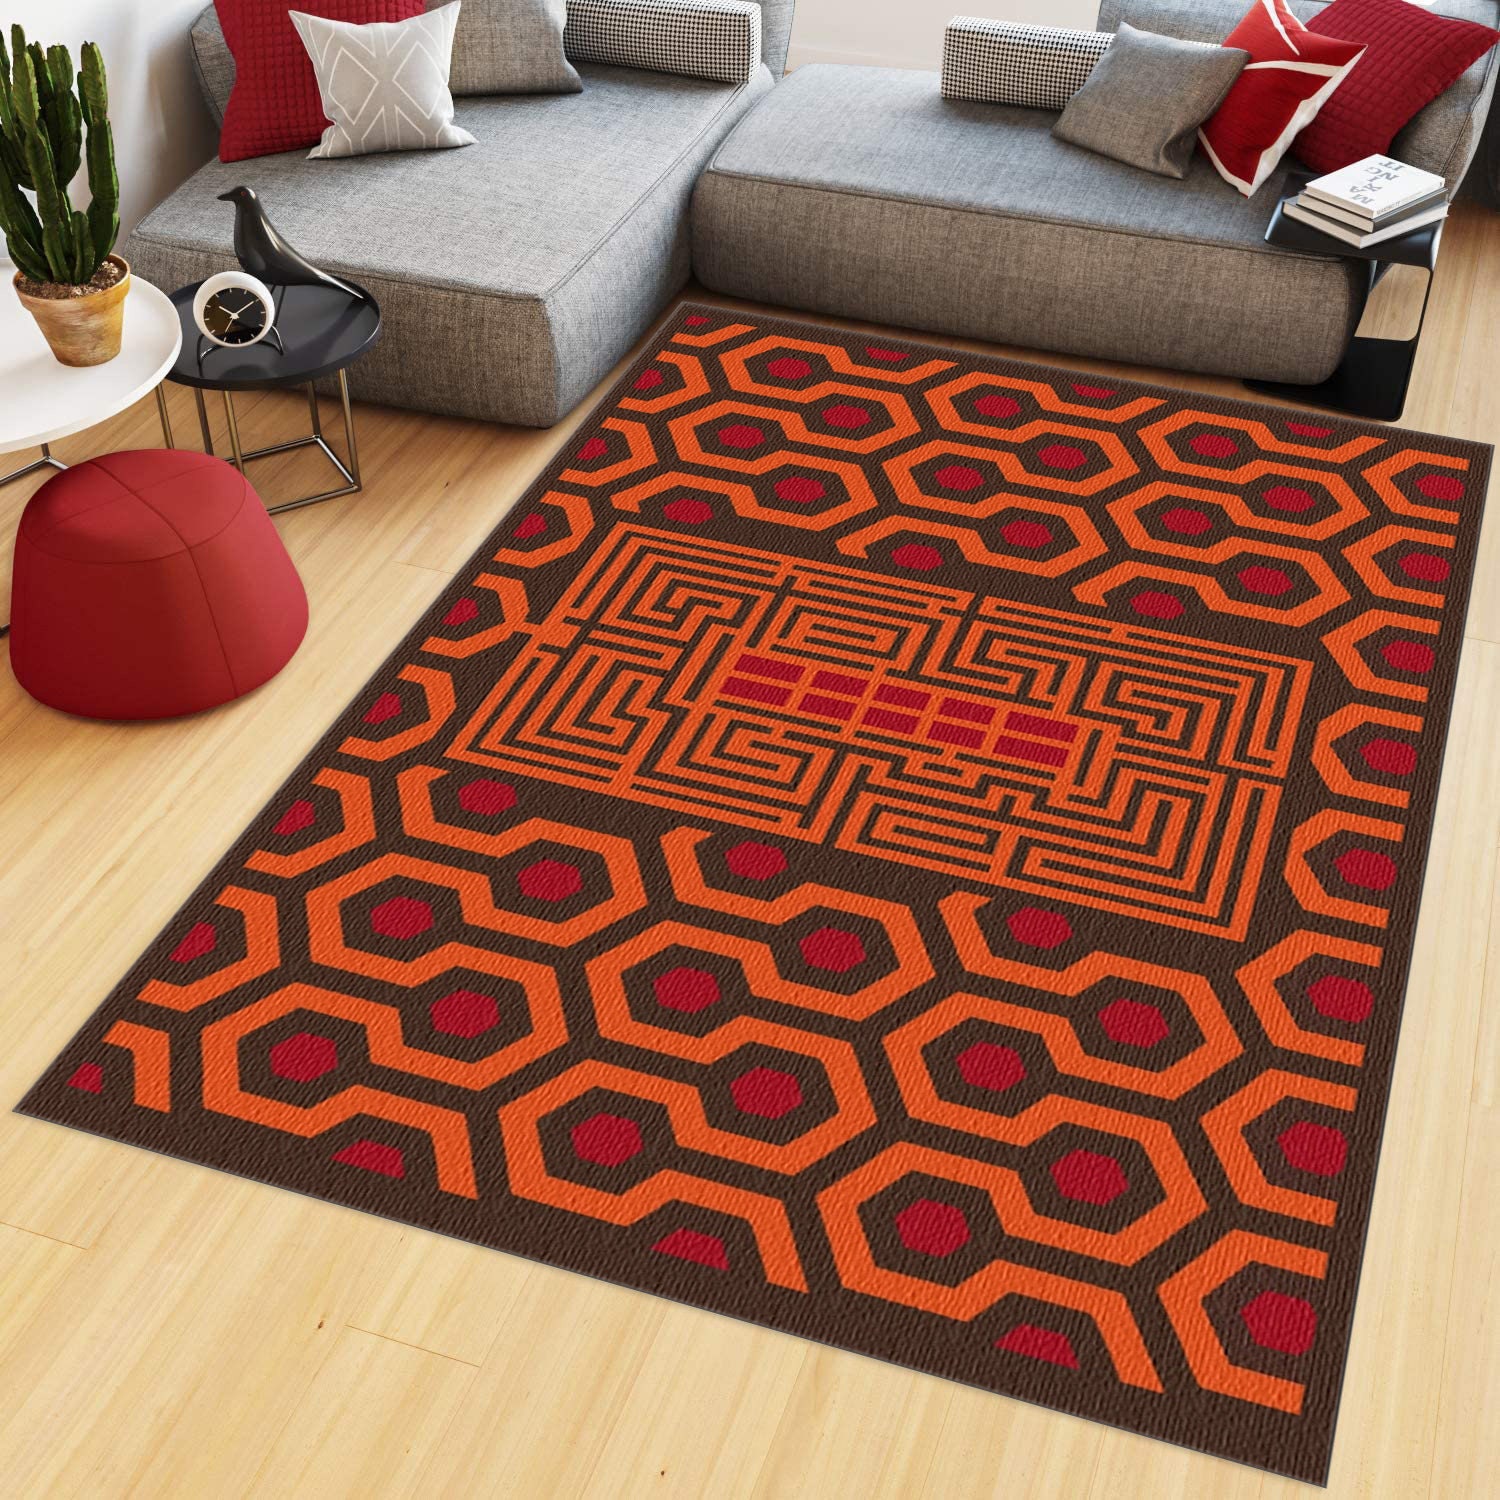 Supreme Iconic Room Decor Carpet - Newcolor7